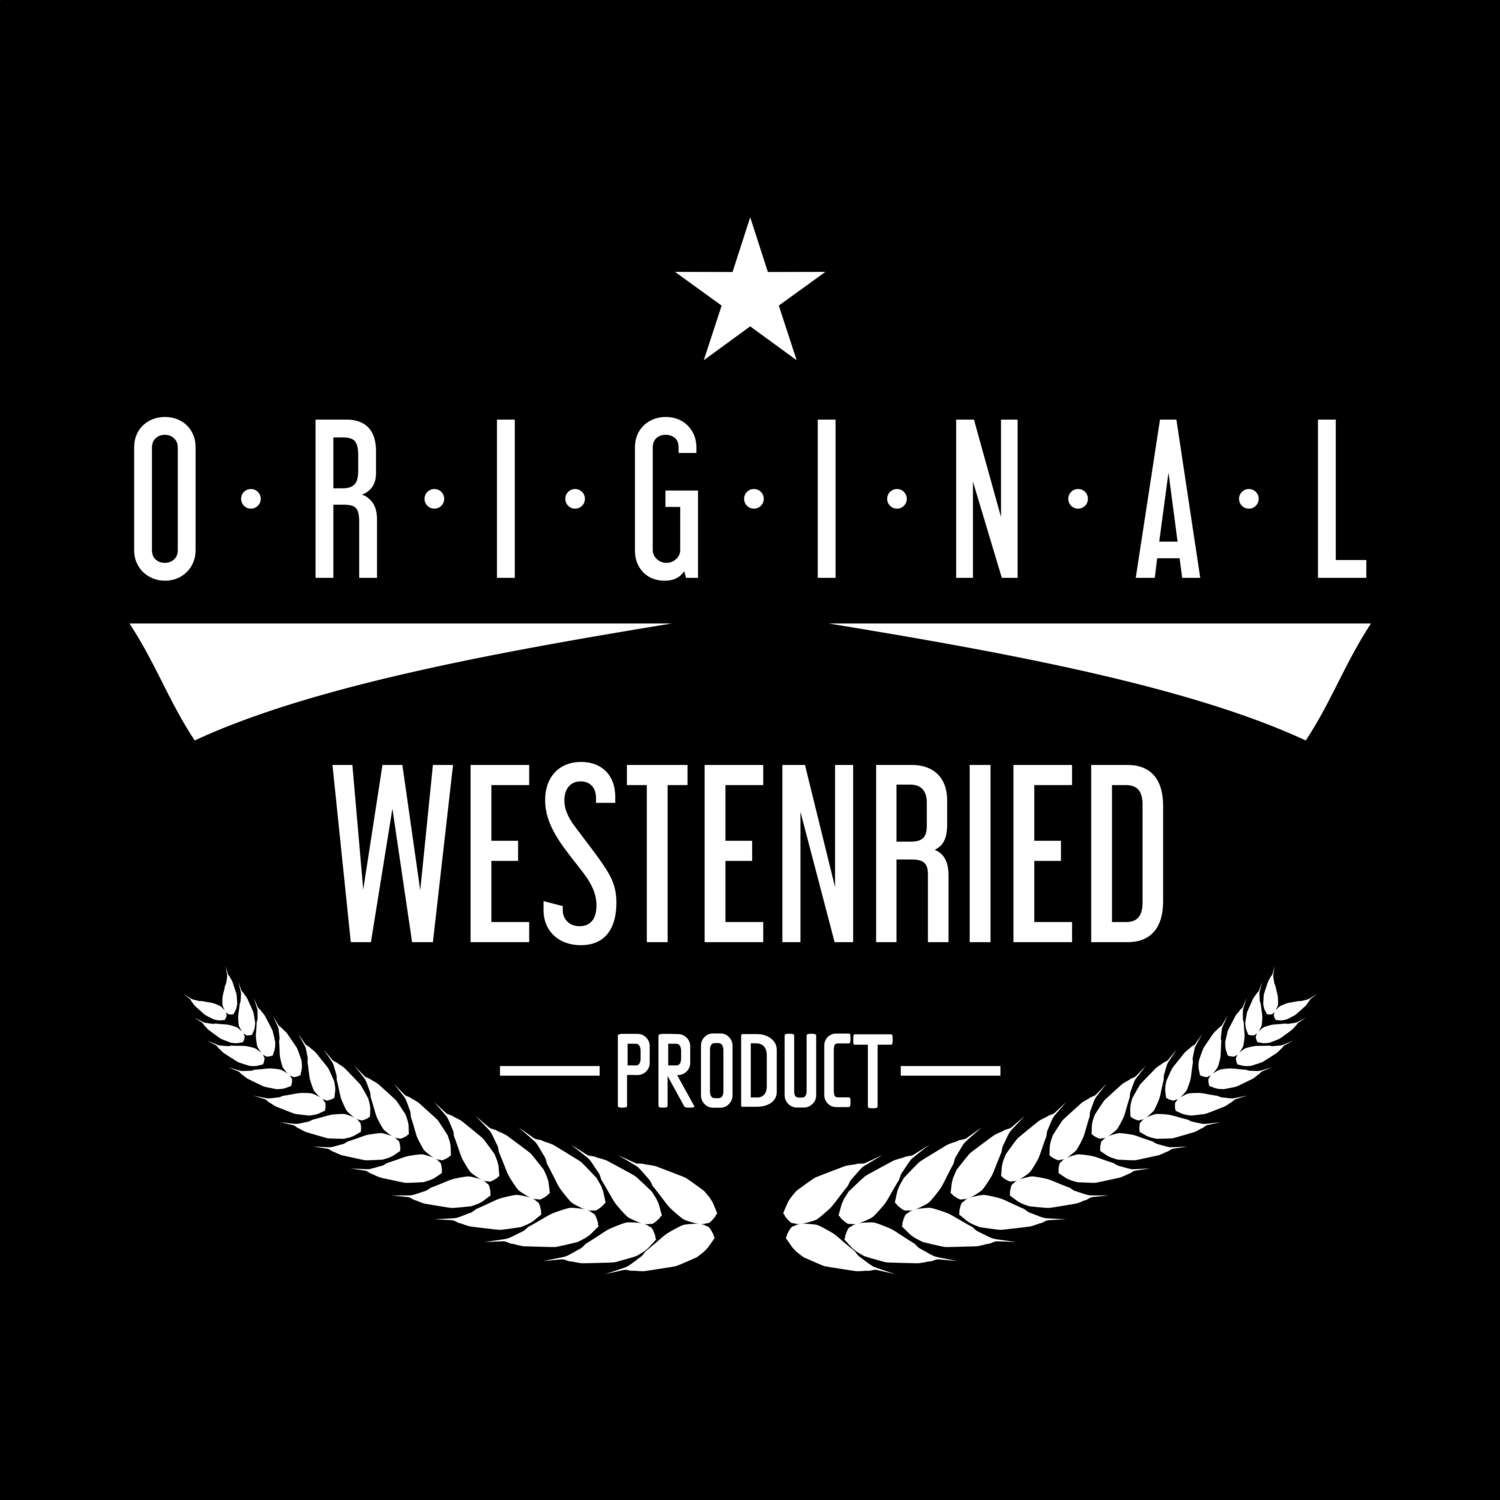 Westenried T-Shirt »Original Product«